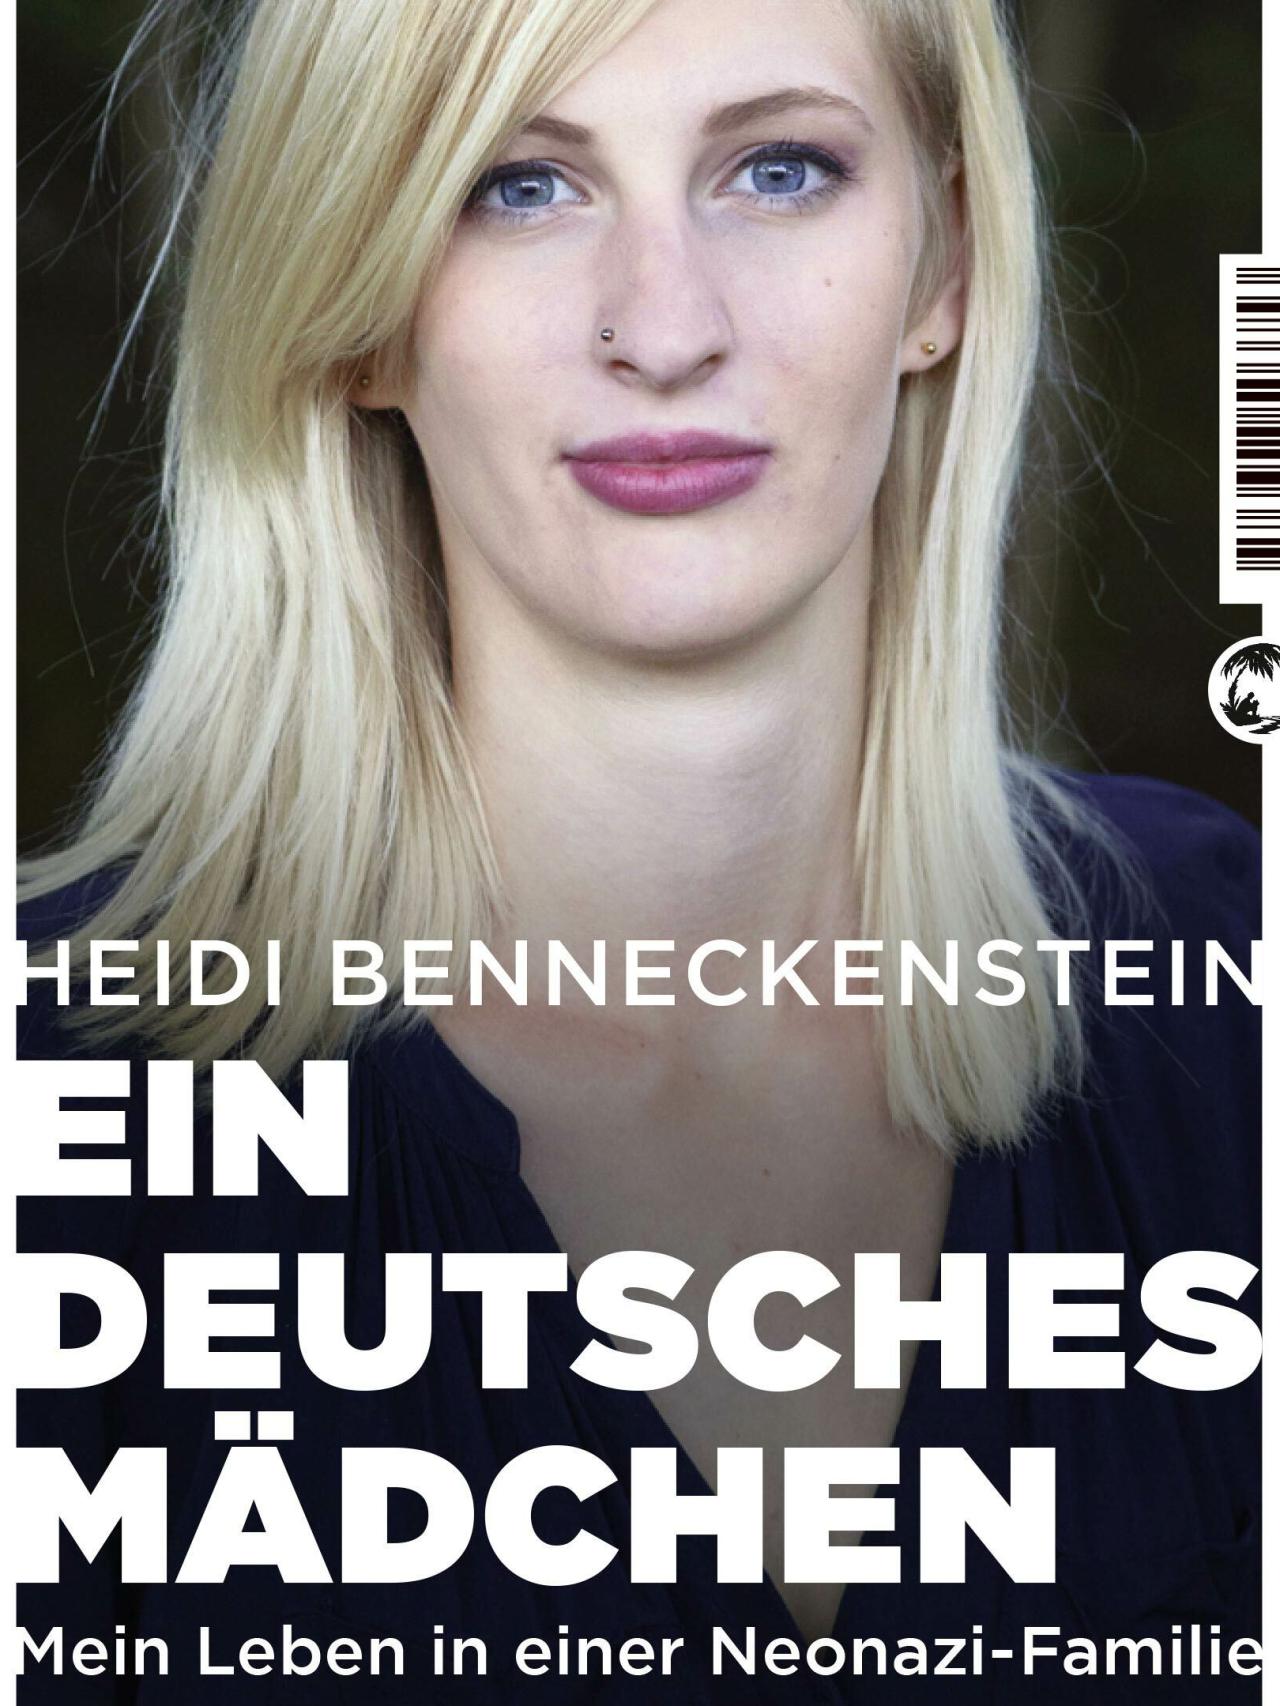 Portada de su libro: Una niña alemana: mi vida en una familia neonazi.